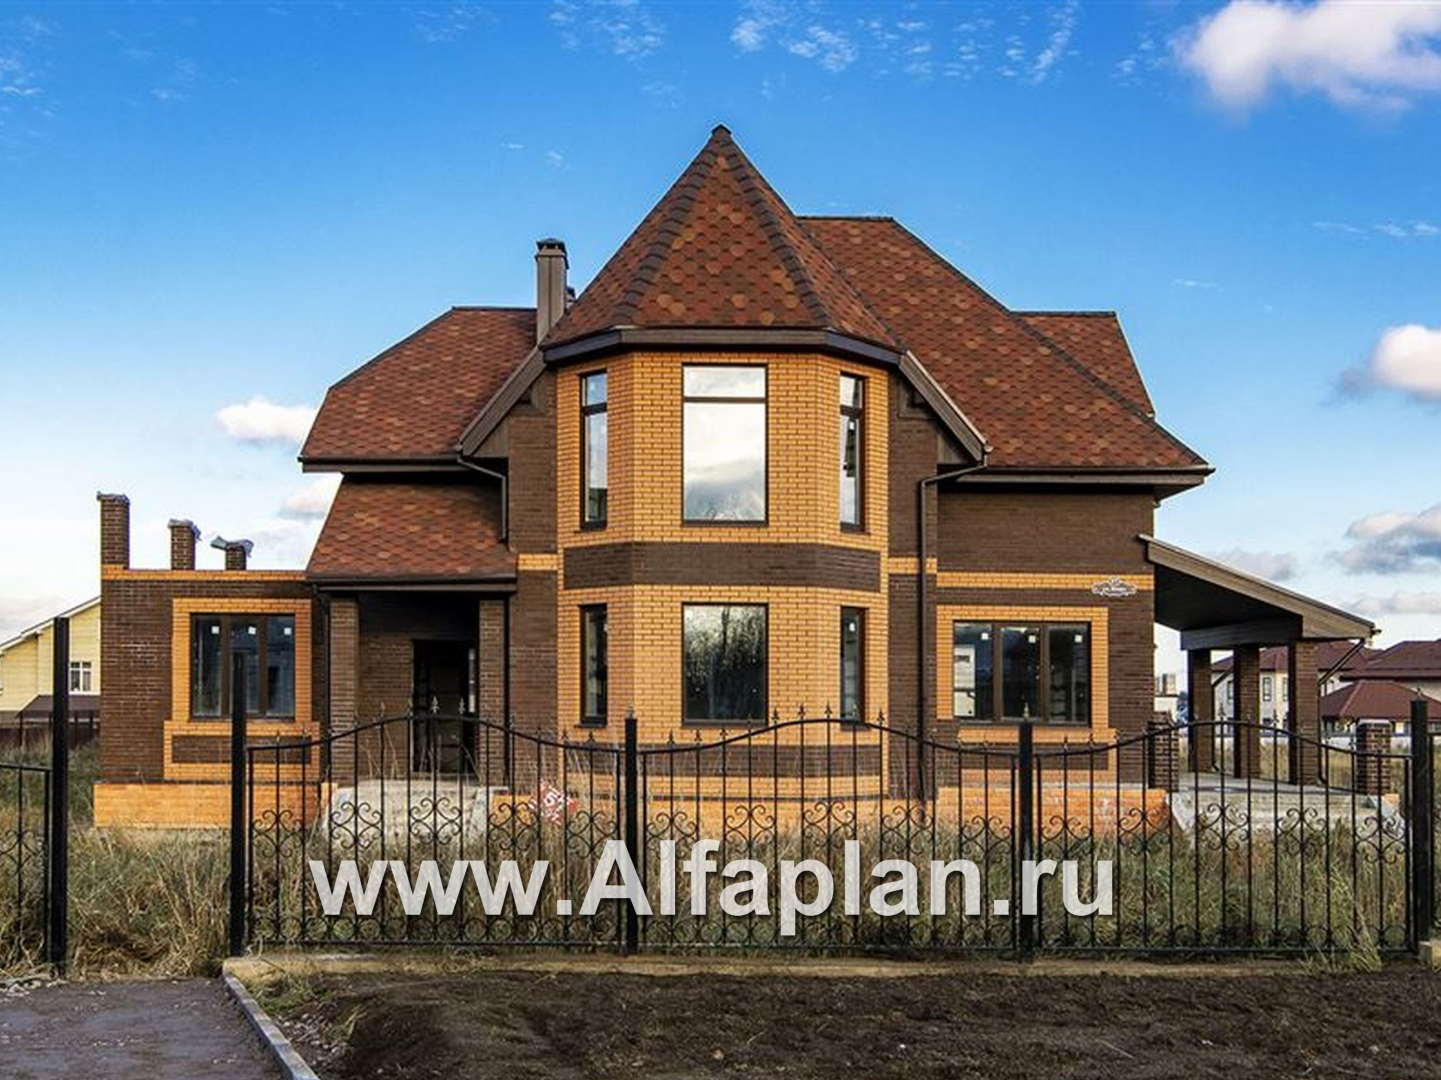 Проекты домов Альфаплан - «Шереметьев» - проект дома с большой открытой террасой - основное изображение